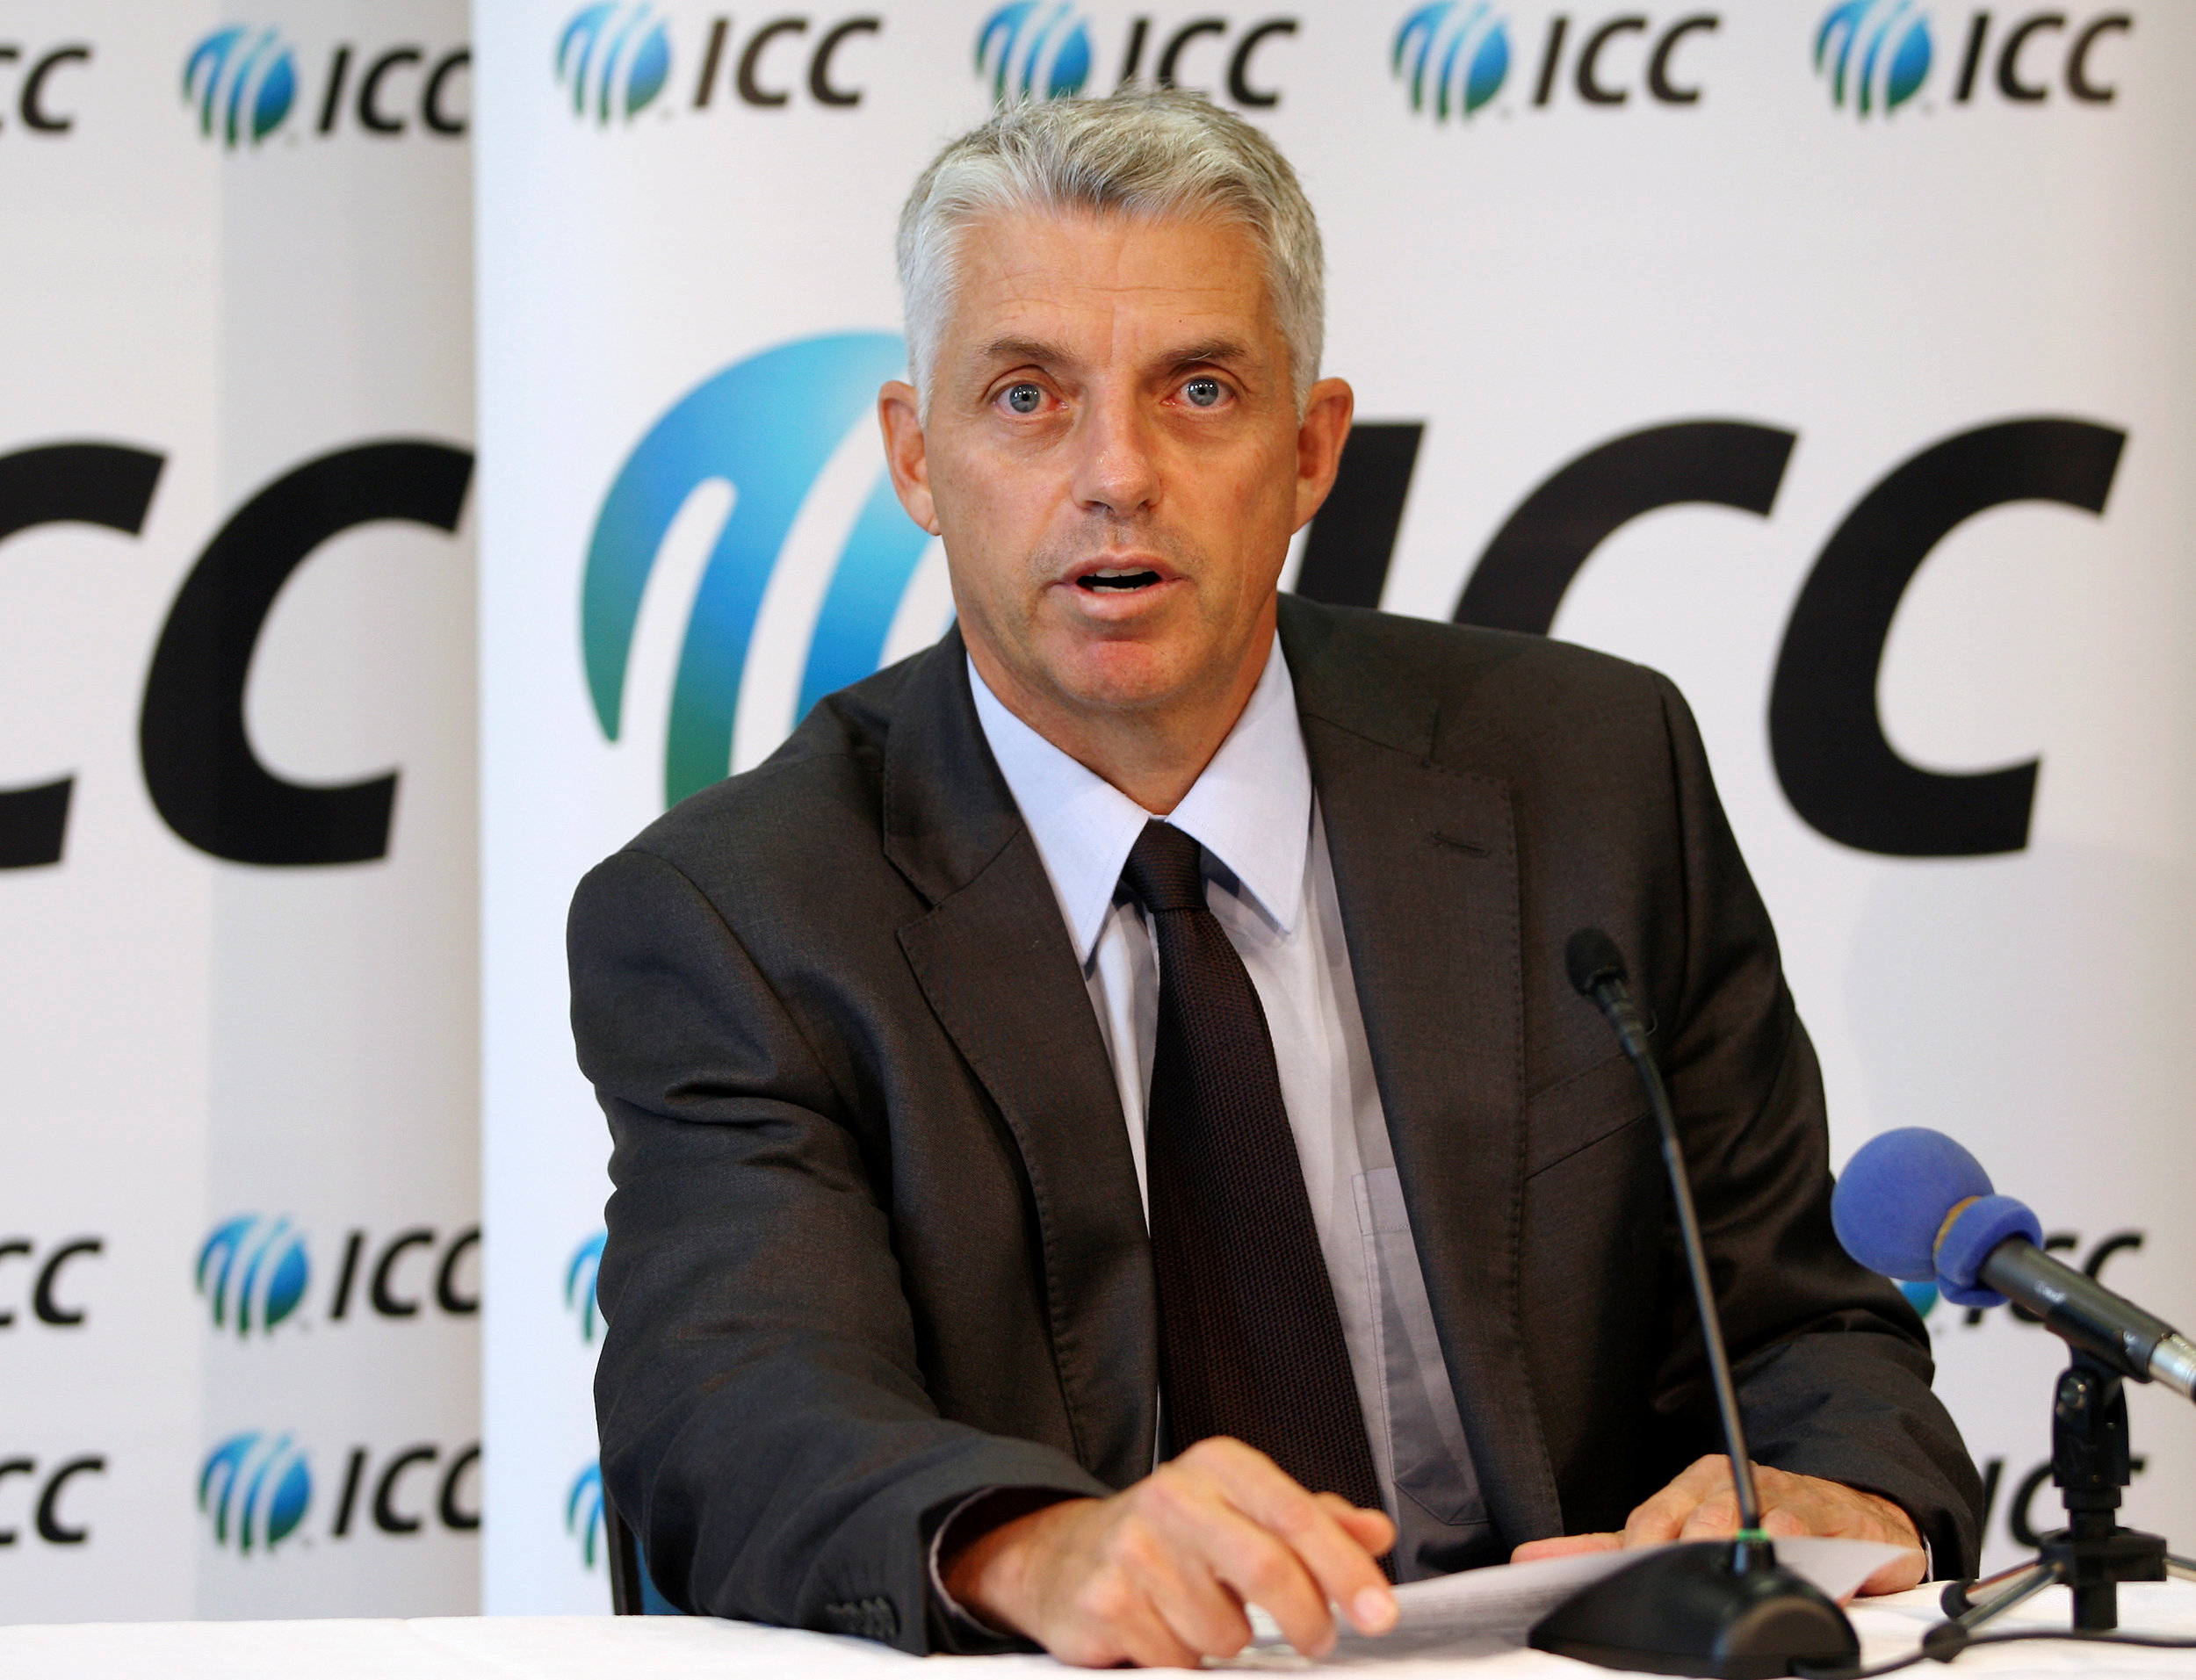 Cricket: ICC unveils inaugural World Test Championship schedule